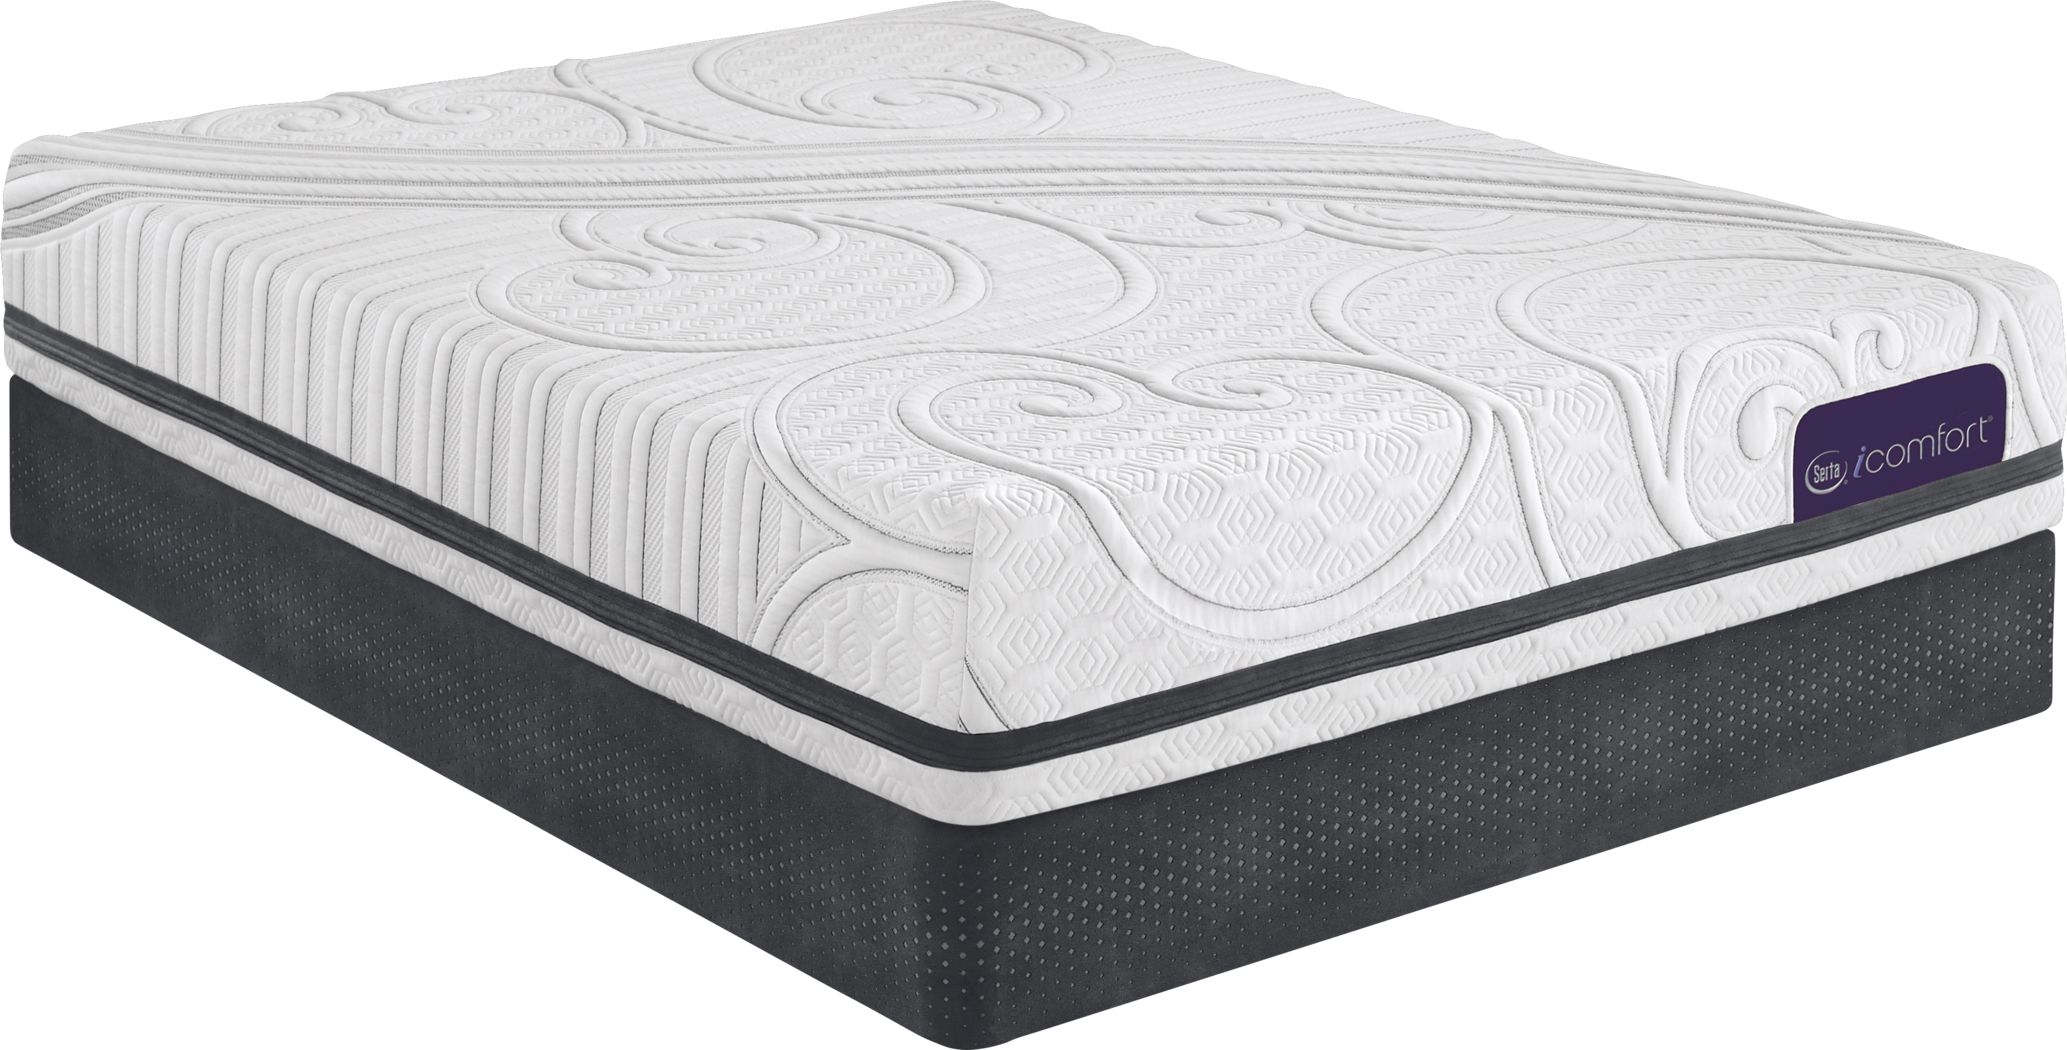 savant plush iii queen mattress